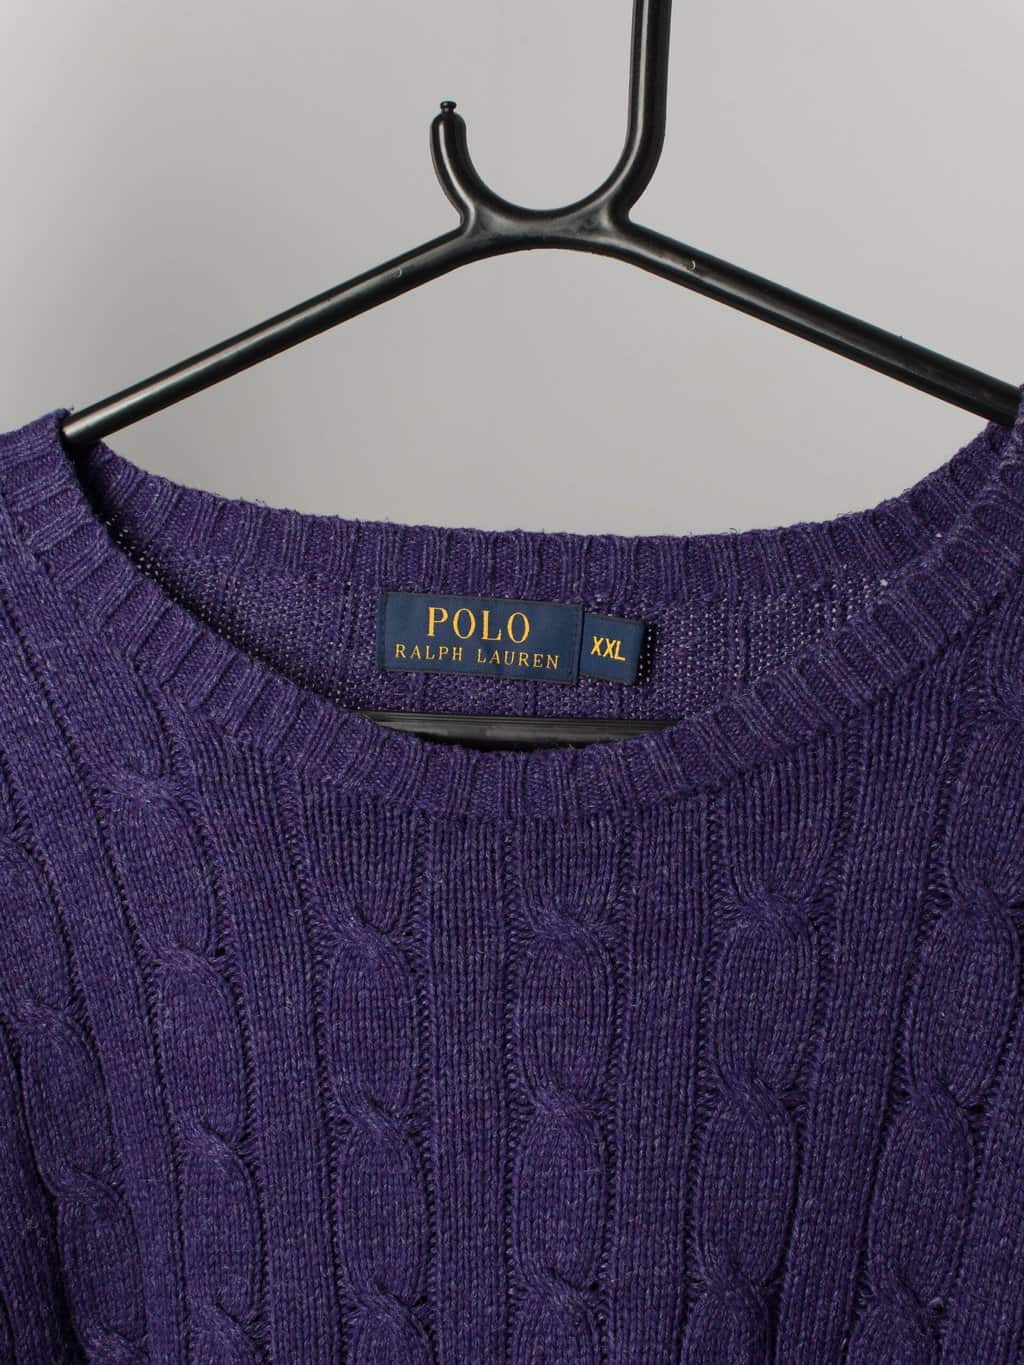 Vintage Polo Ralph Lauren jumper Tussah Silk cable-knit Blue Purple - XXL -  St Cyr Vintage